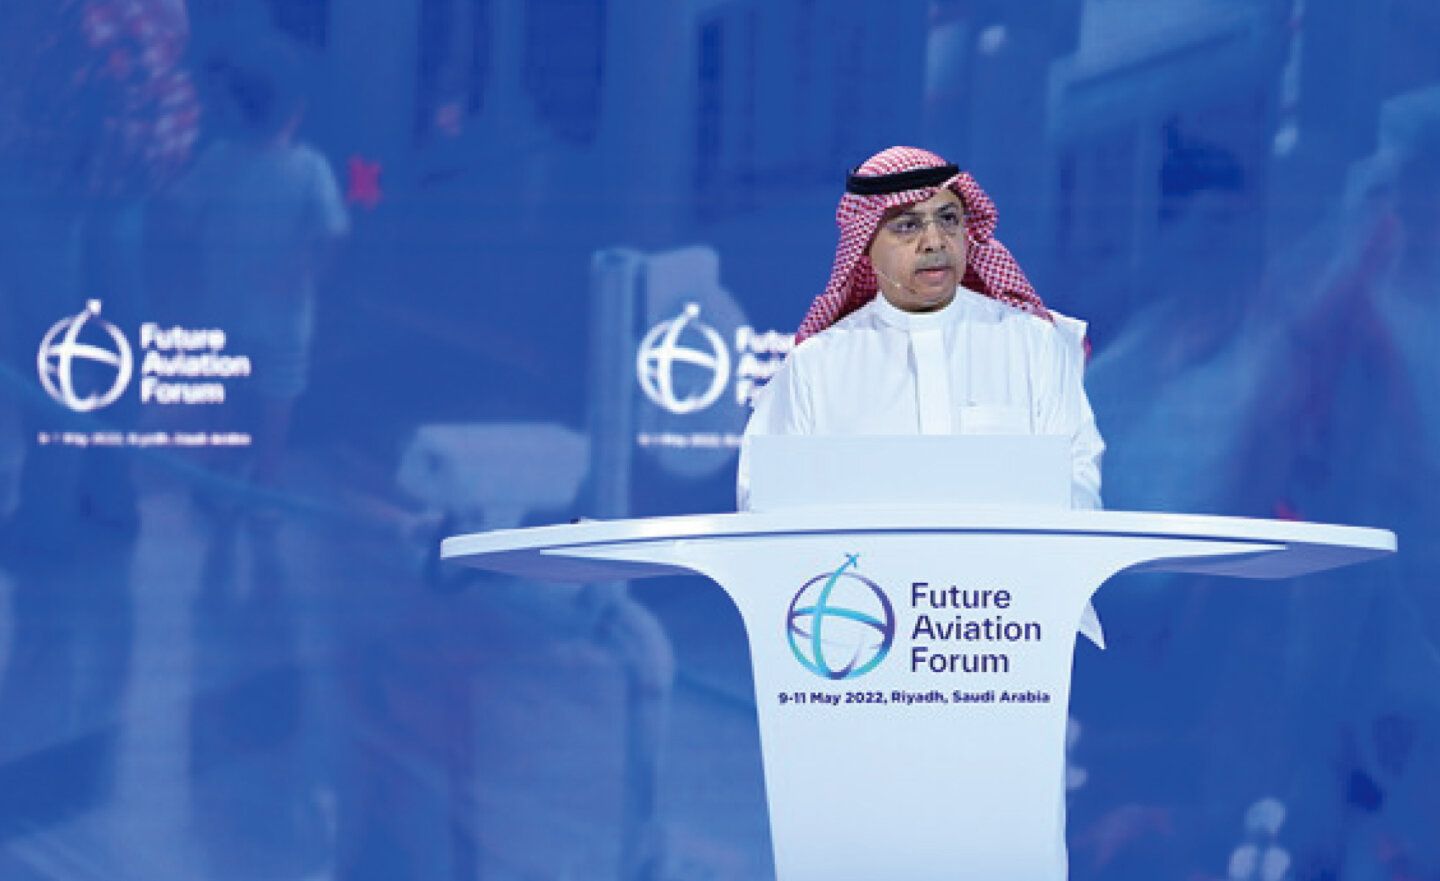 沙特民航總局 (GACA) 舉辦 2024 年「未來航空論壇」上，探討航空業面臨的挑戰與機遇